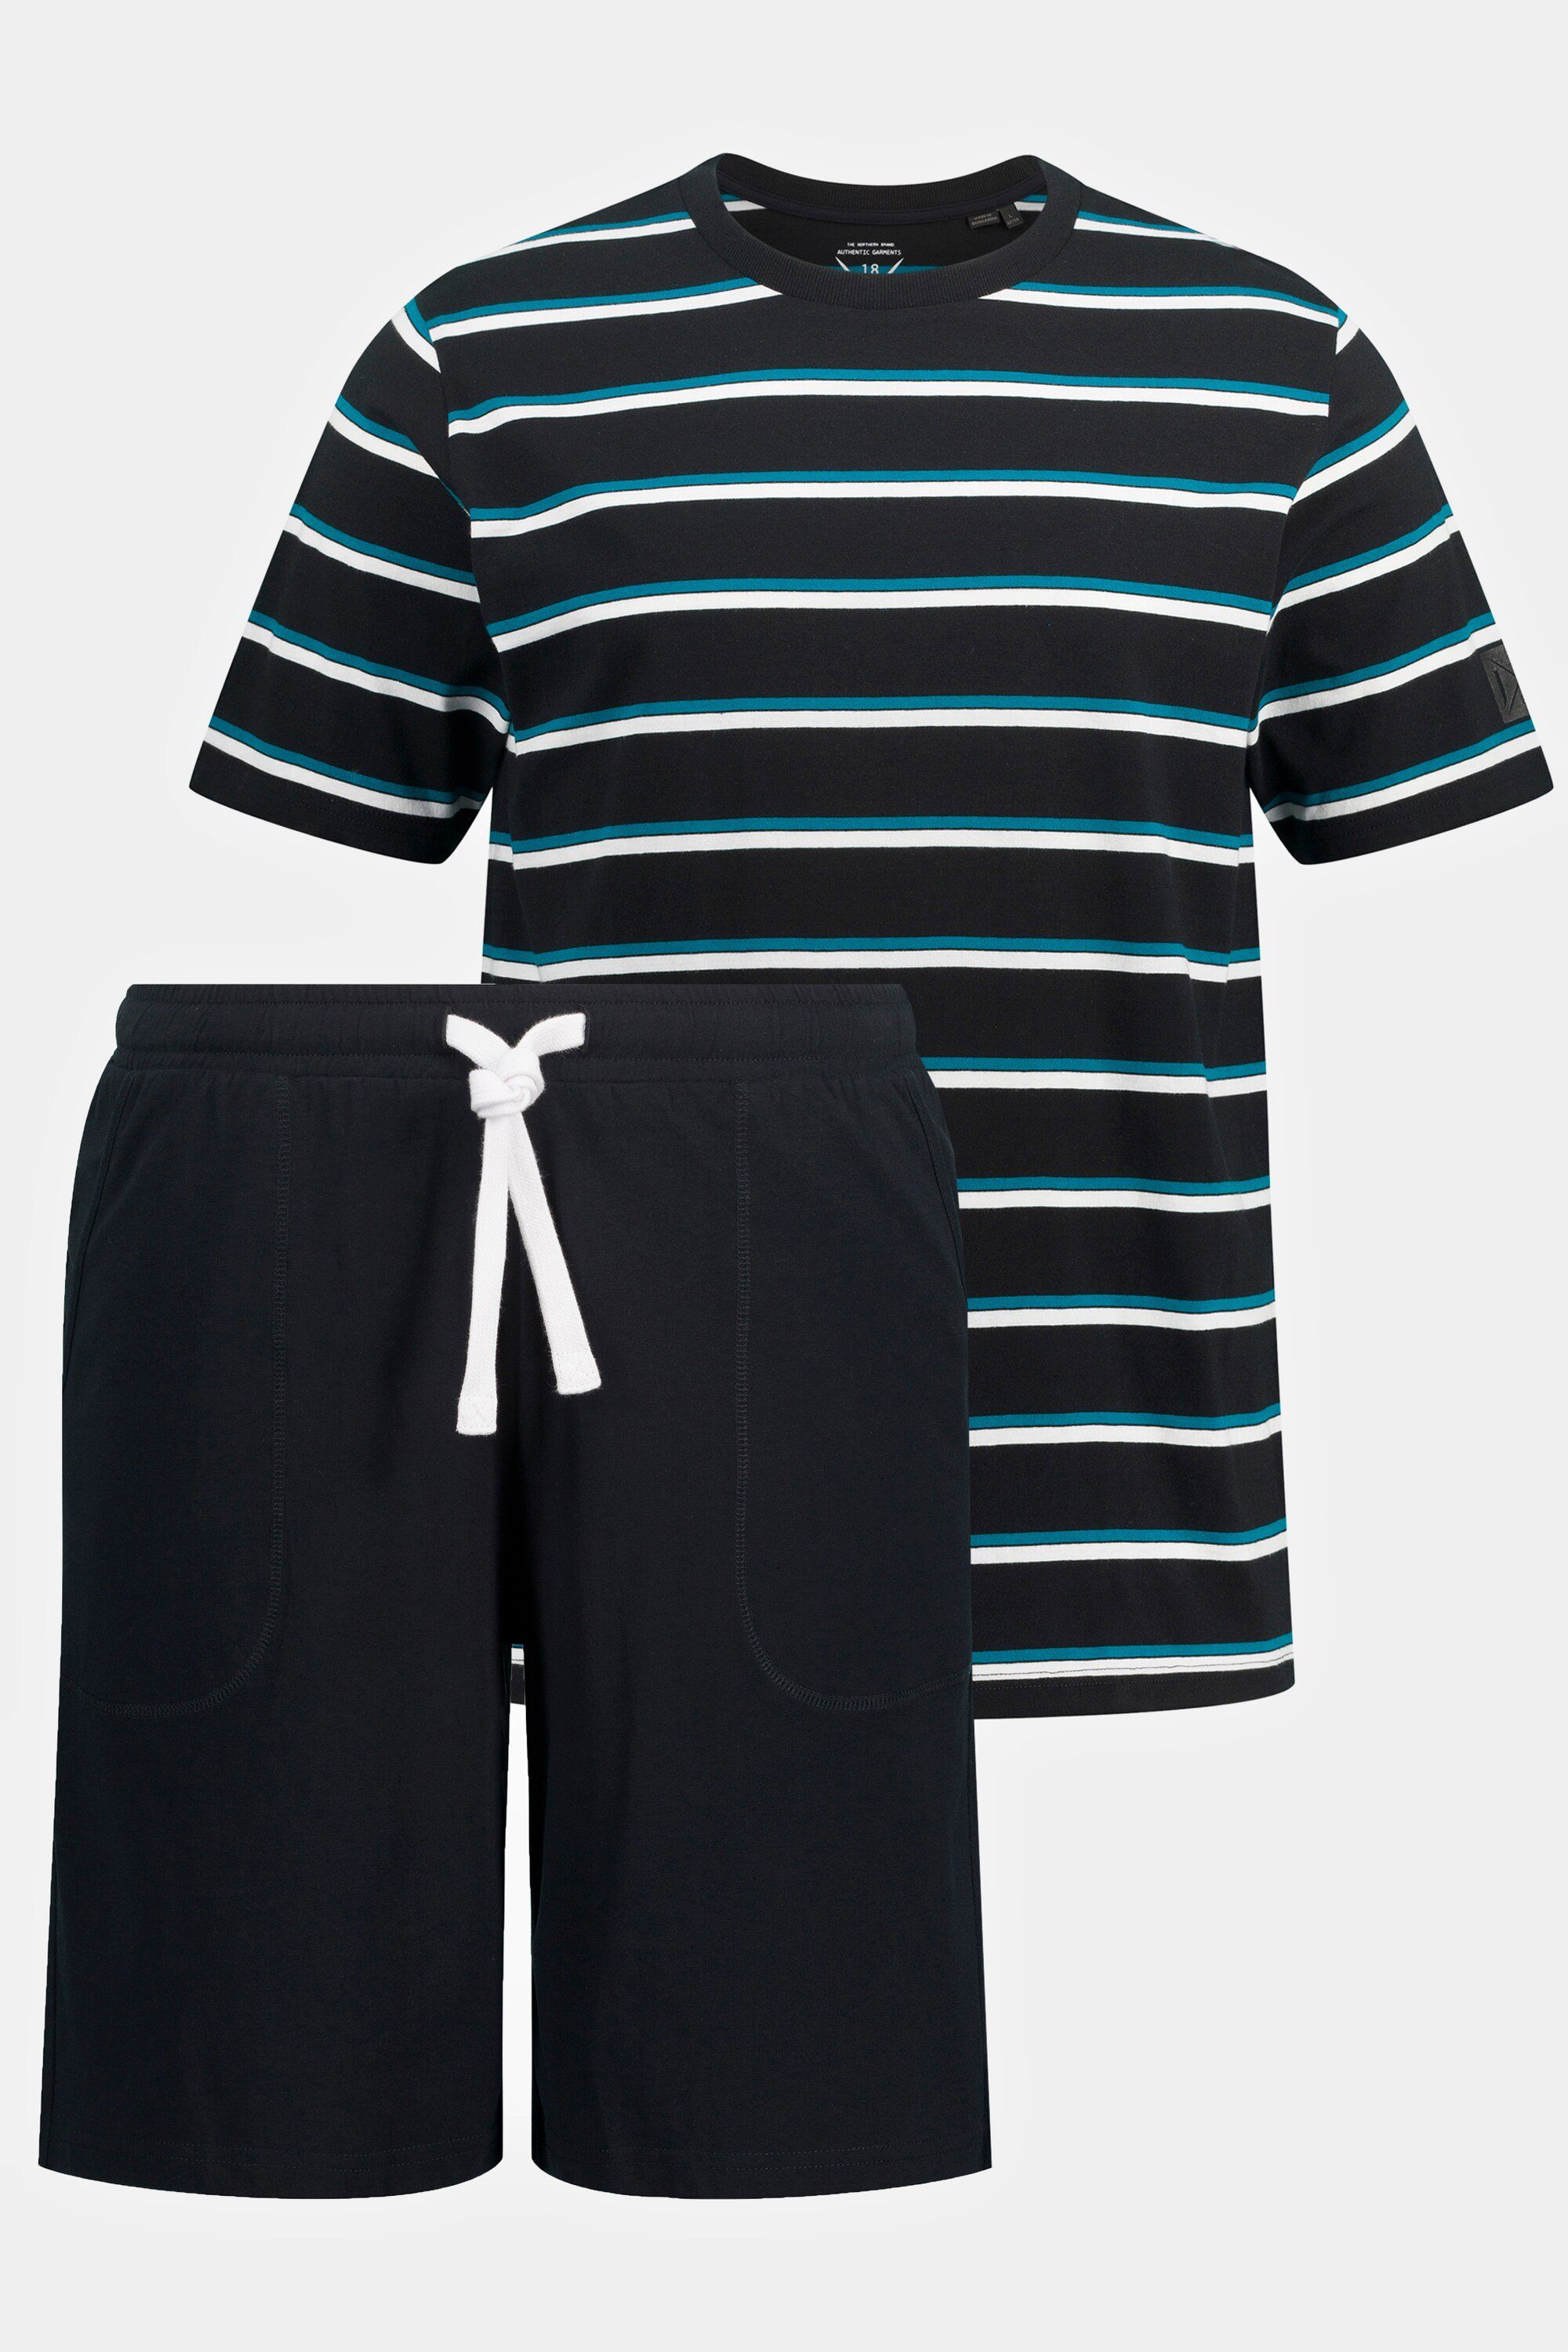 JP1880 Schlafanzug Schlafanzug Homewear kurzer Shorts Zweiteiler